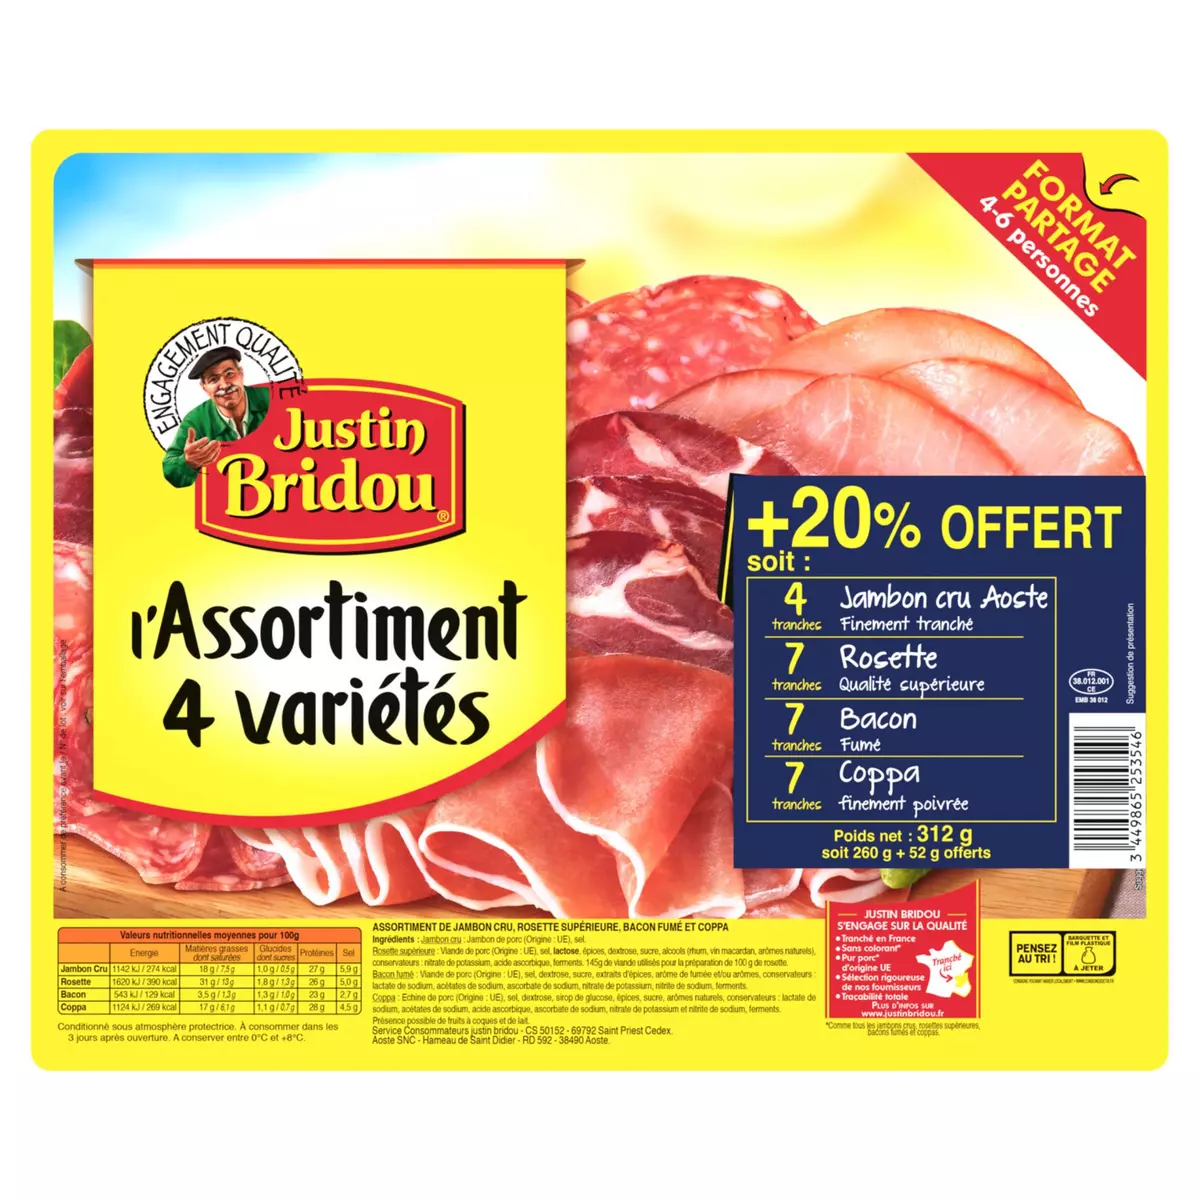 JUSTIN BRIDOU L'Assortiment de 4 variétés jambon cru rosette bacon coppa 4-6 personnes 312g